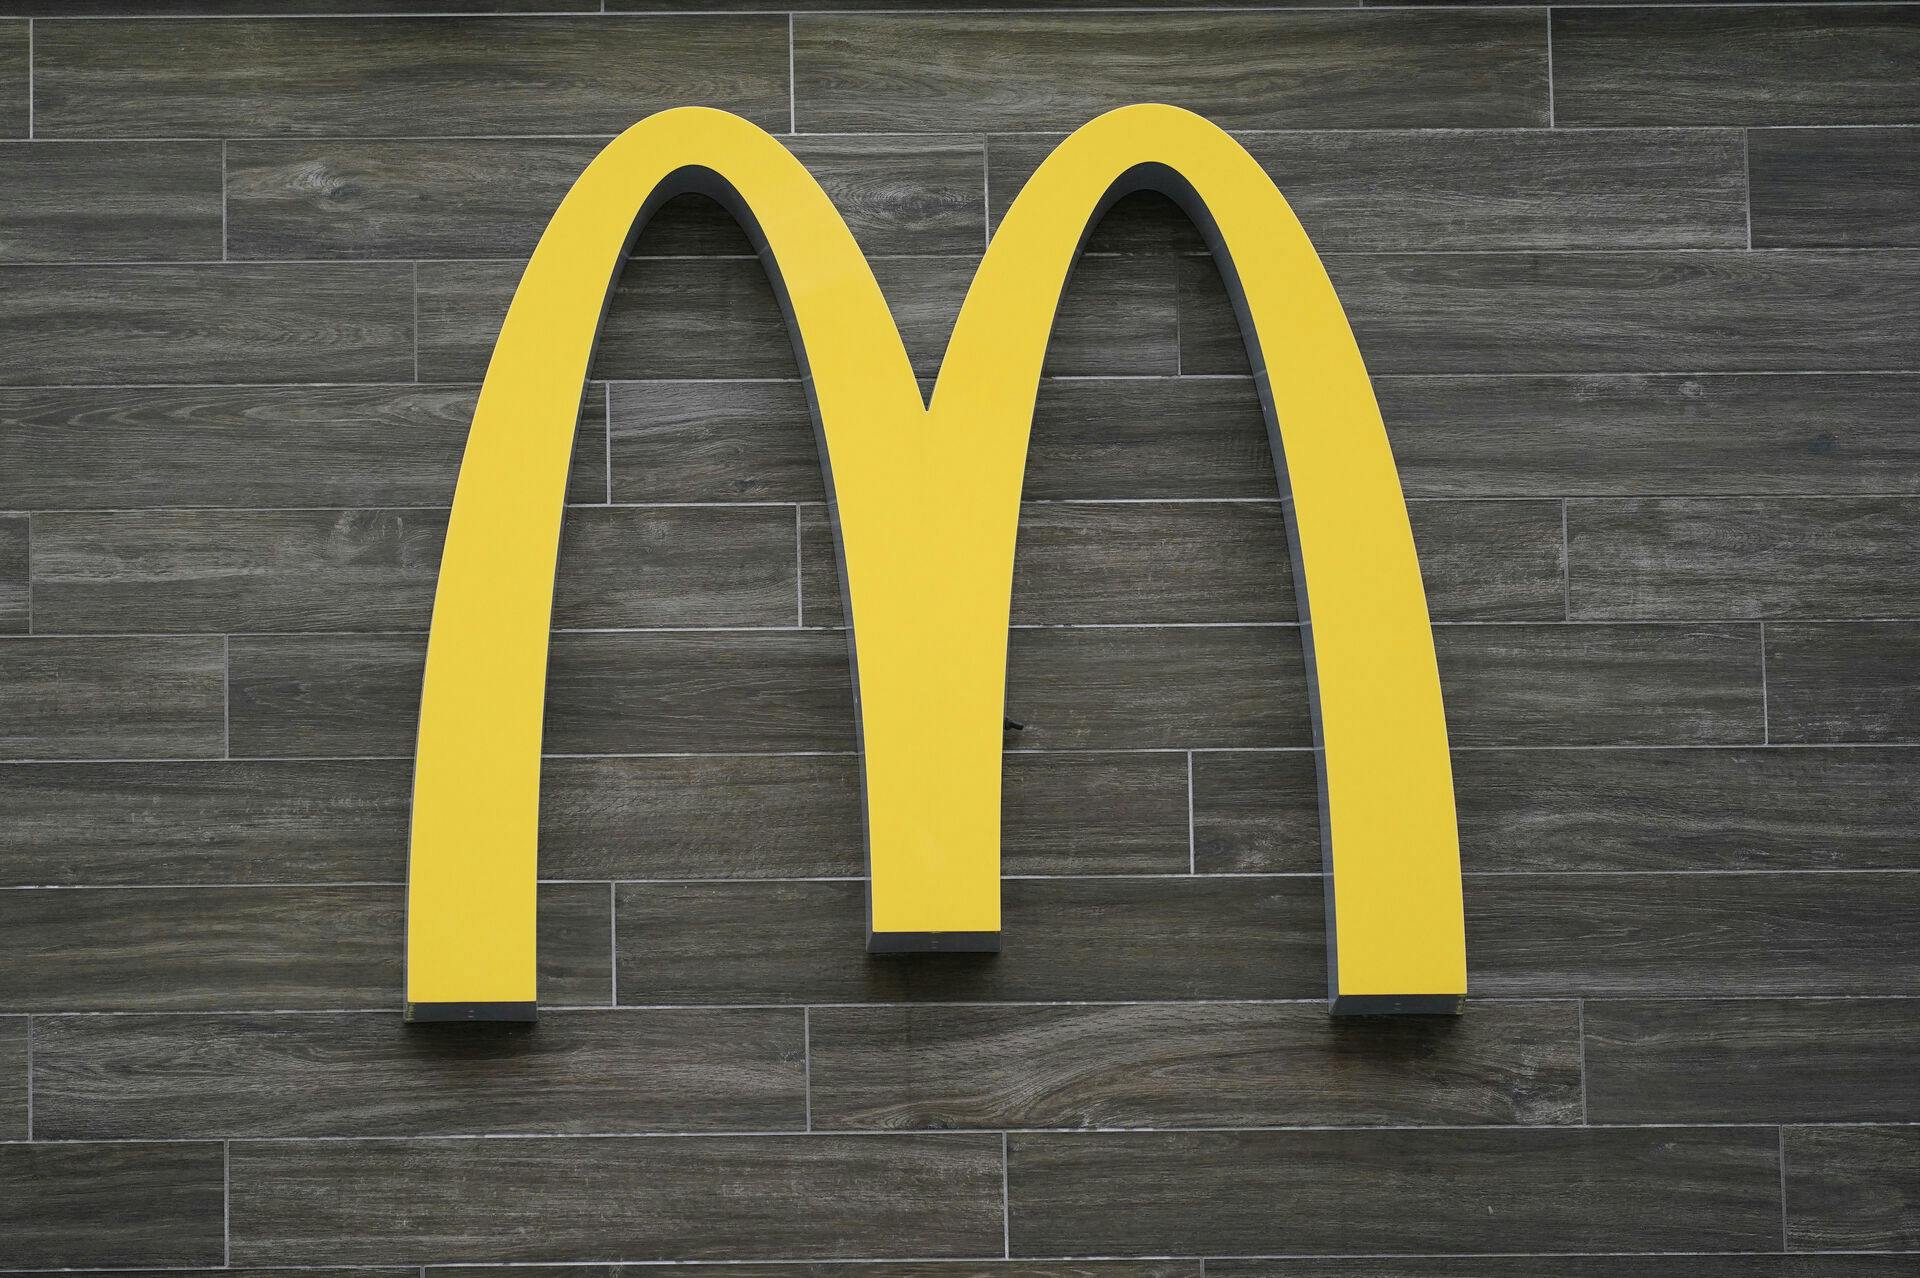 Episoden skete på en McDonald's i Washington.